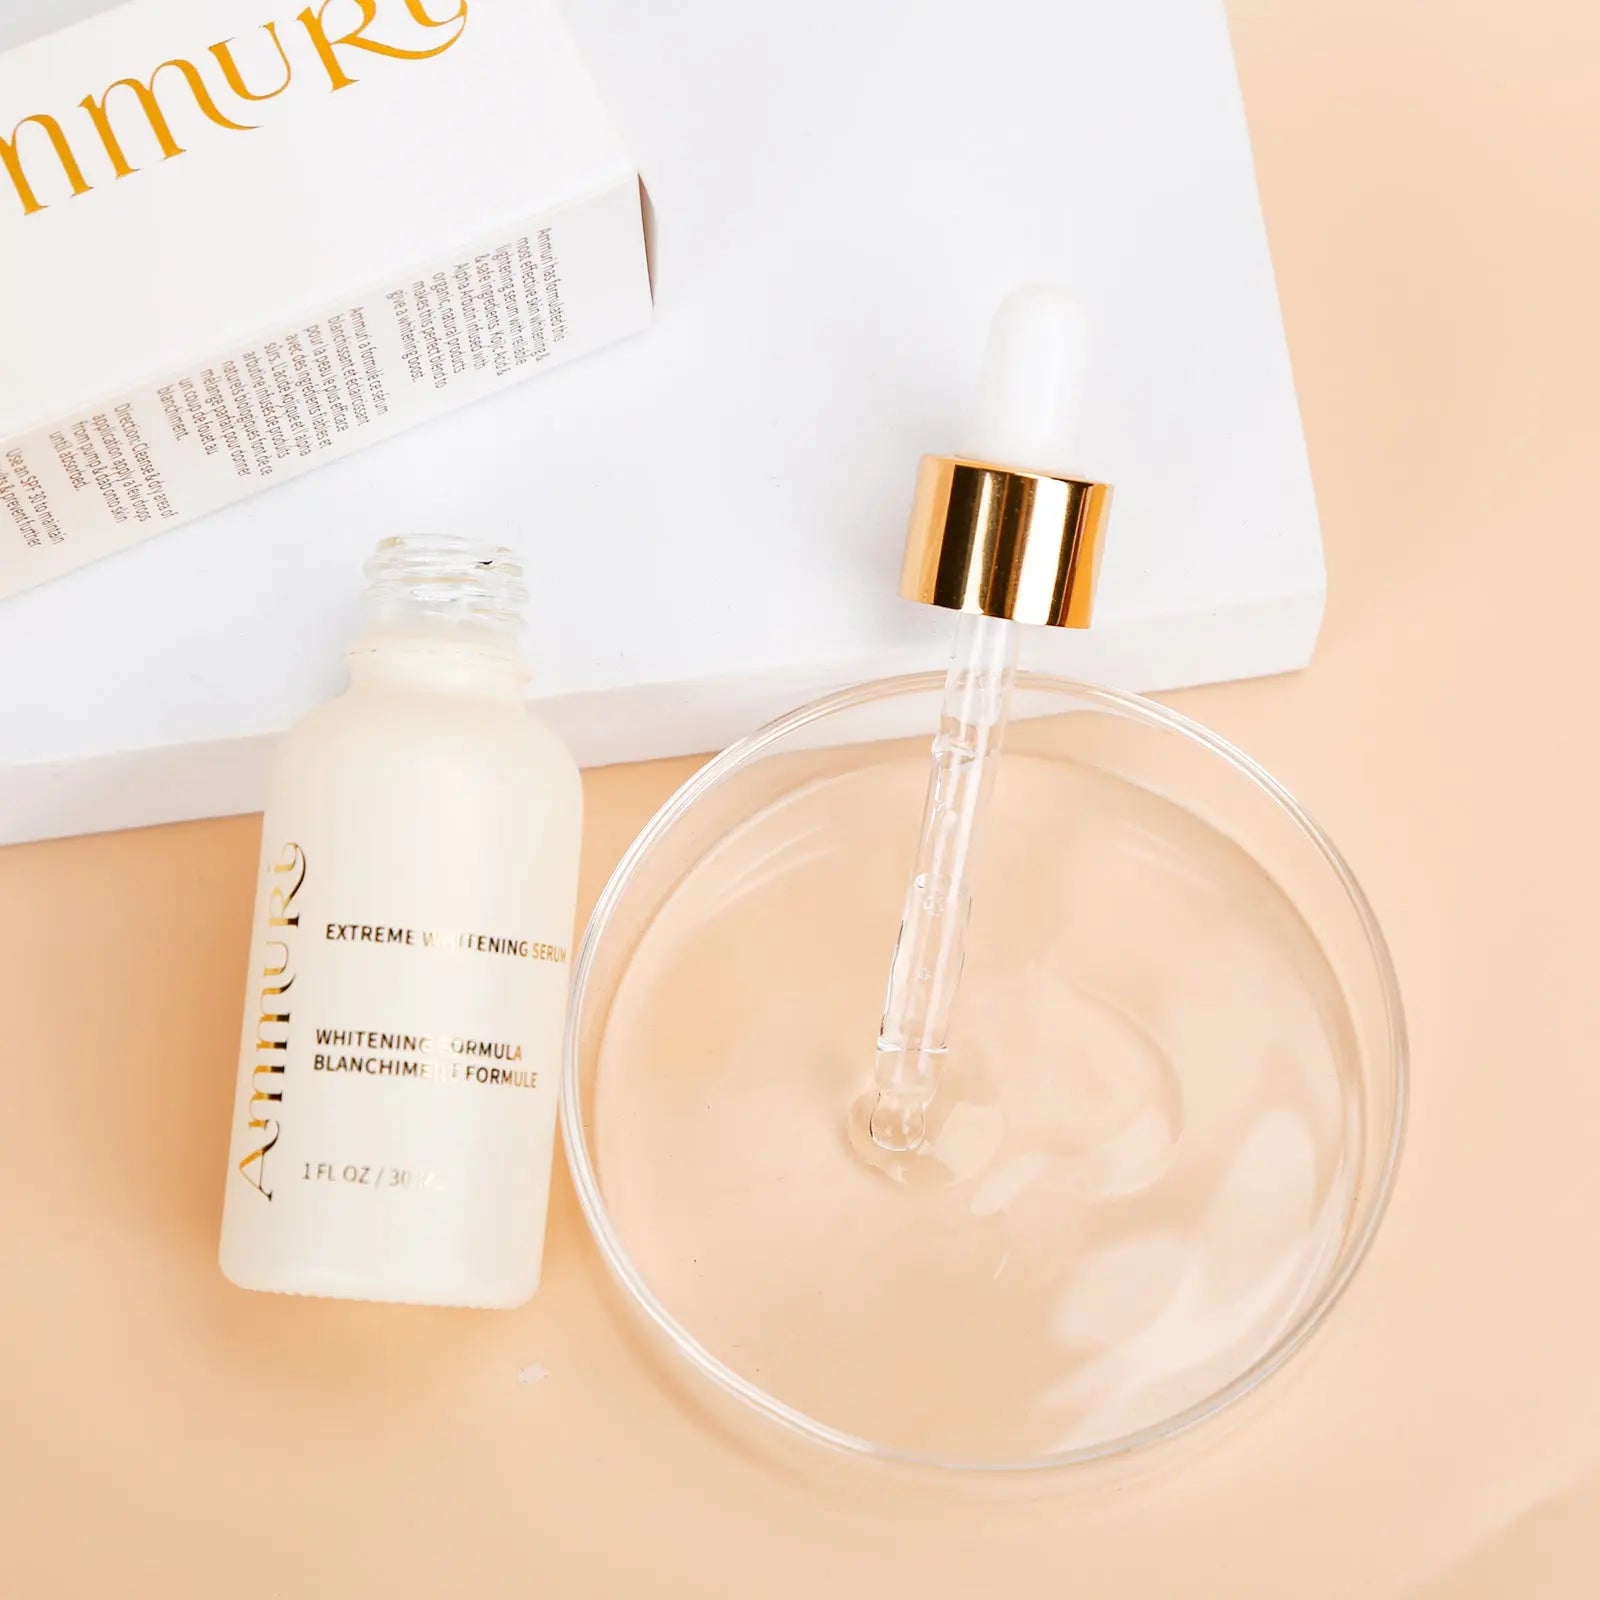 Ammuri Extreme Whitening Lightening Serum Kojic Acid Dark Spots Circle Anti Ageing Anti Wrinkle Ammuri Skincare